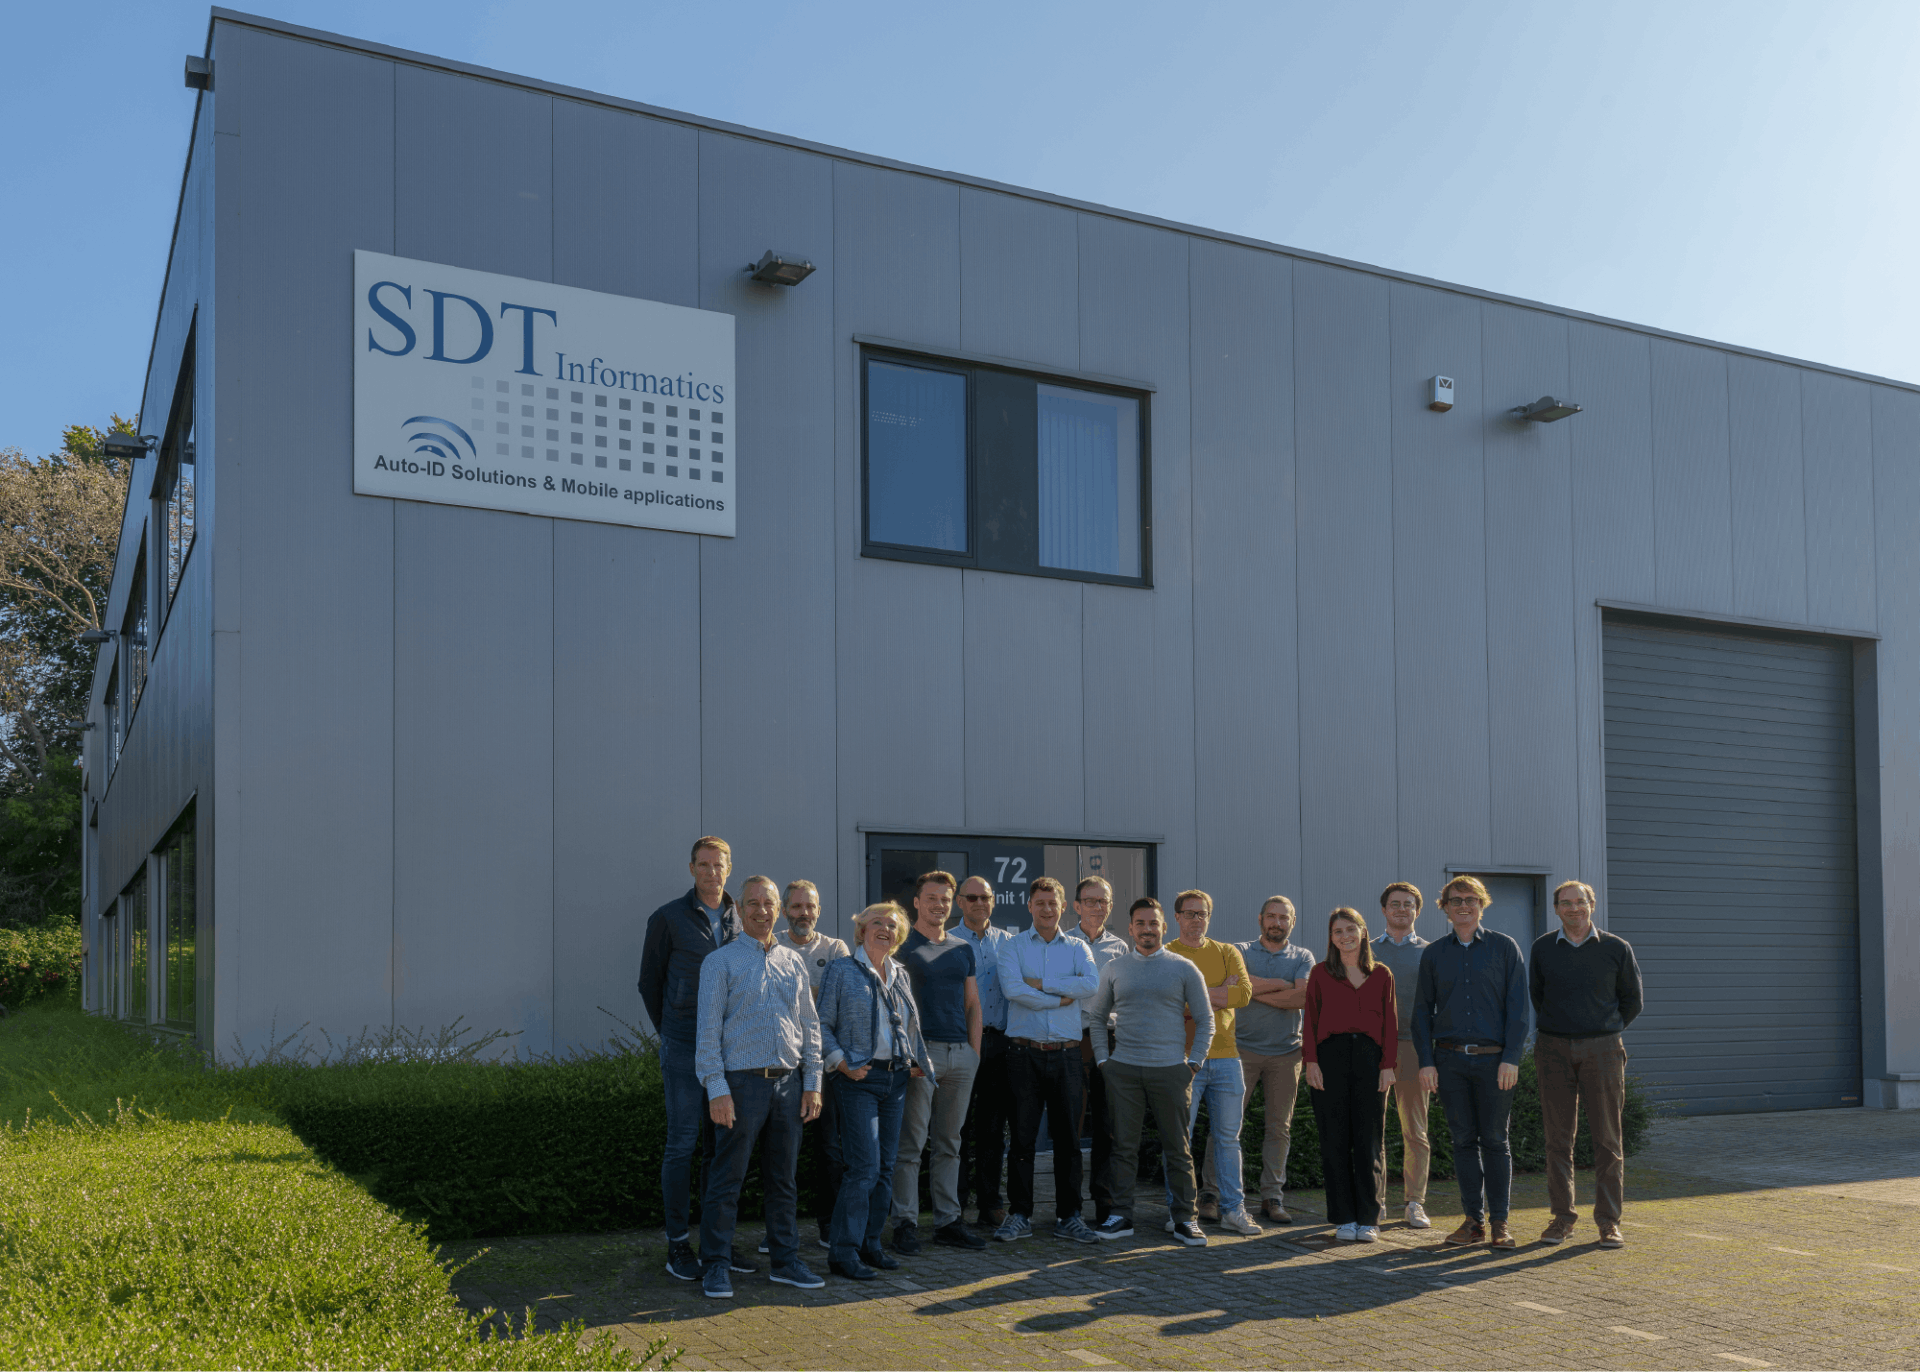 CaptureTech neemt in België SDT Informatics over